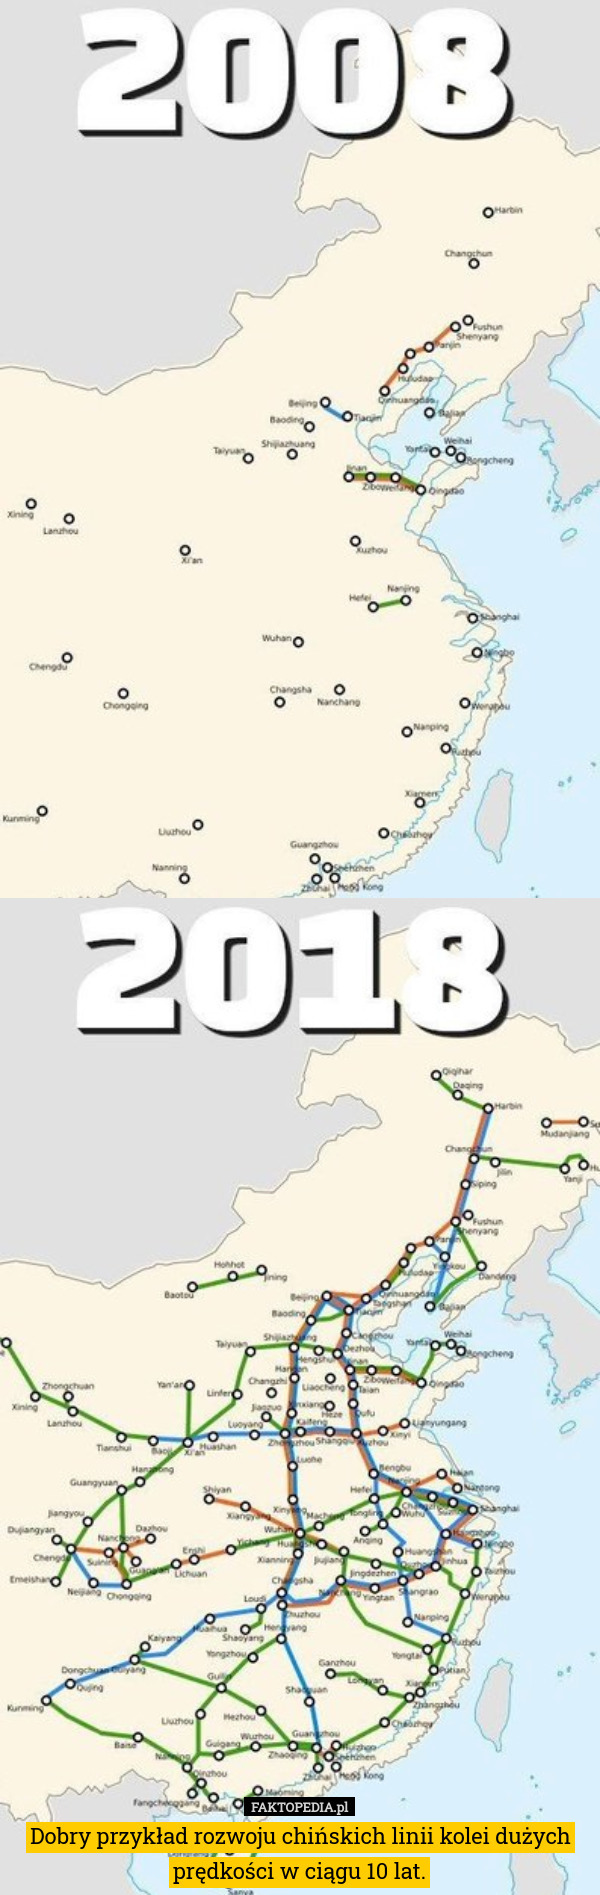 Dobry przykład rozwoju chińskich linii kolei dużych prędkości w ciągu 10 lat. 